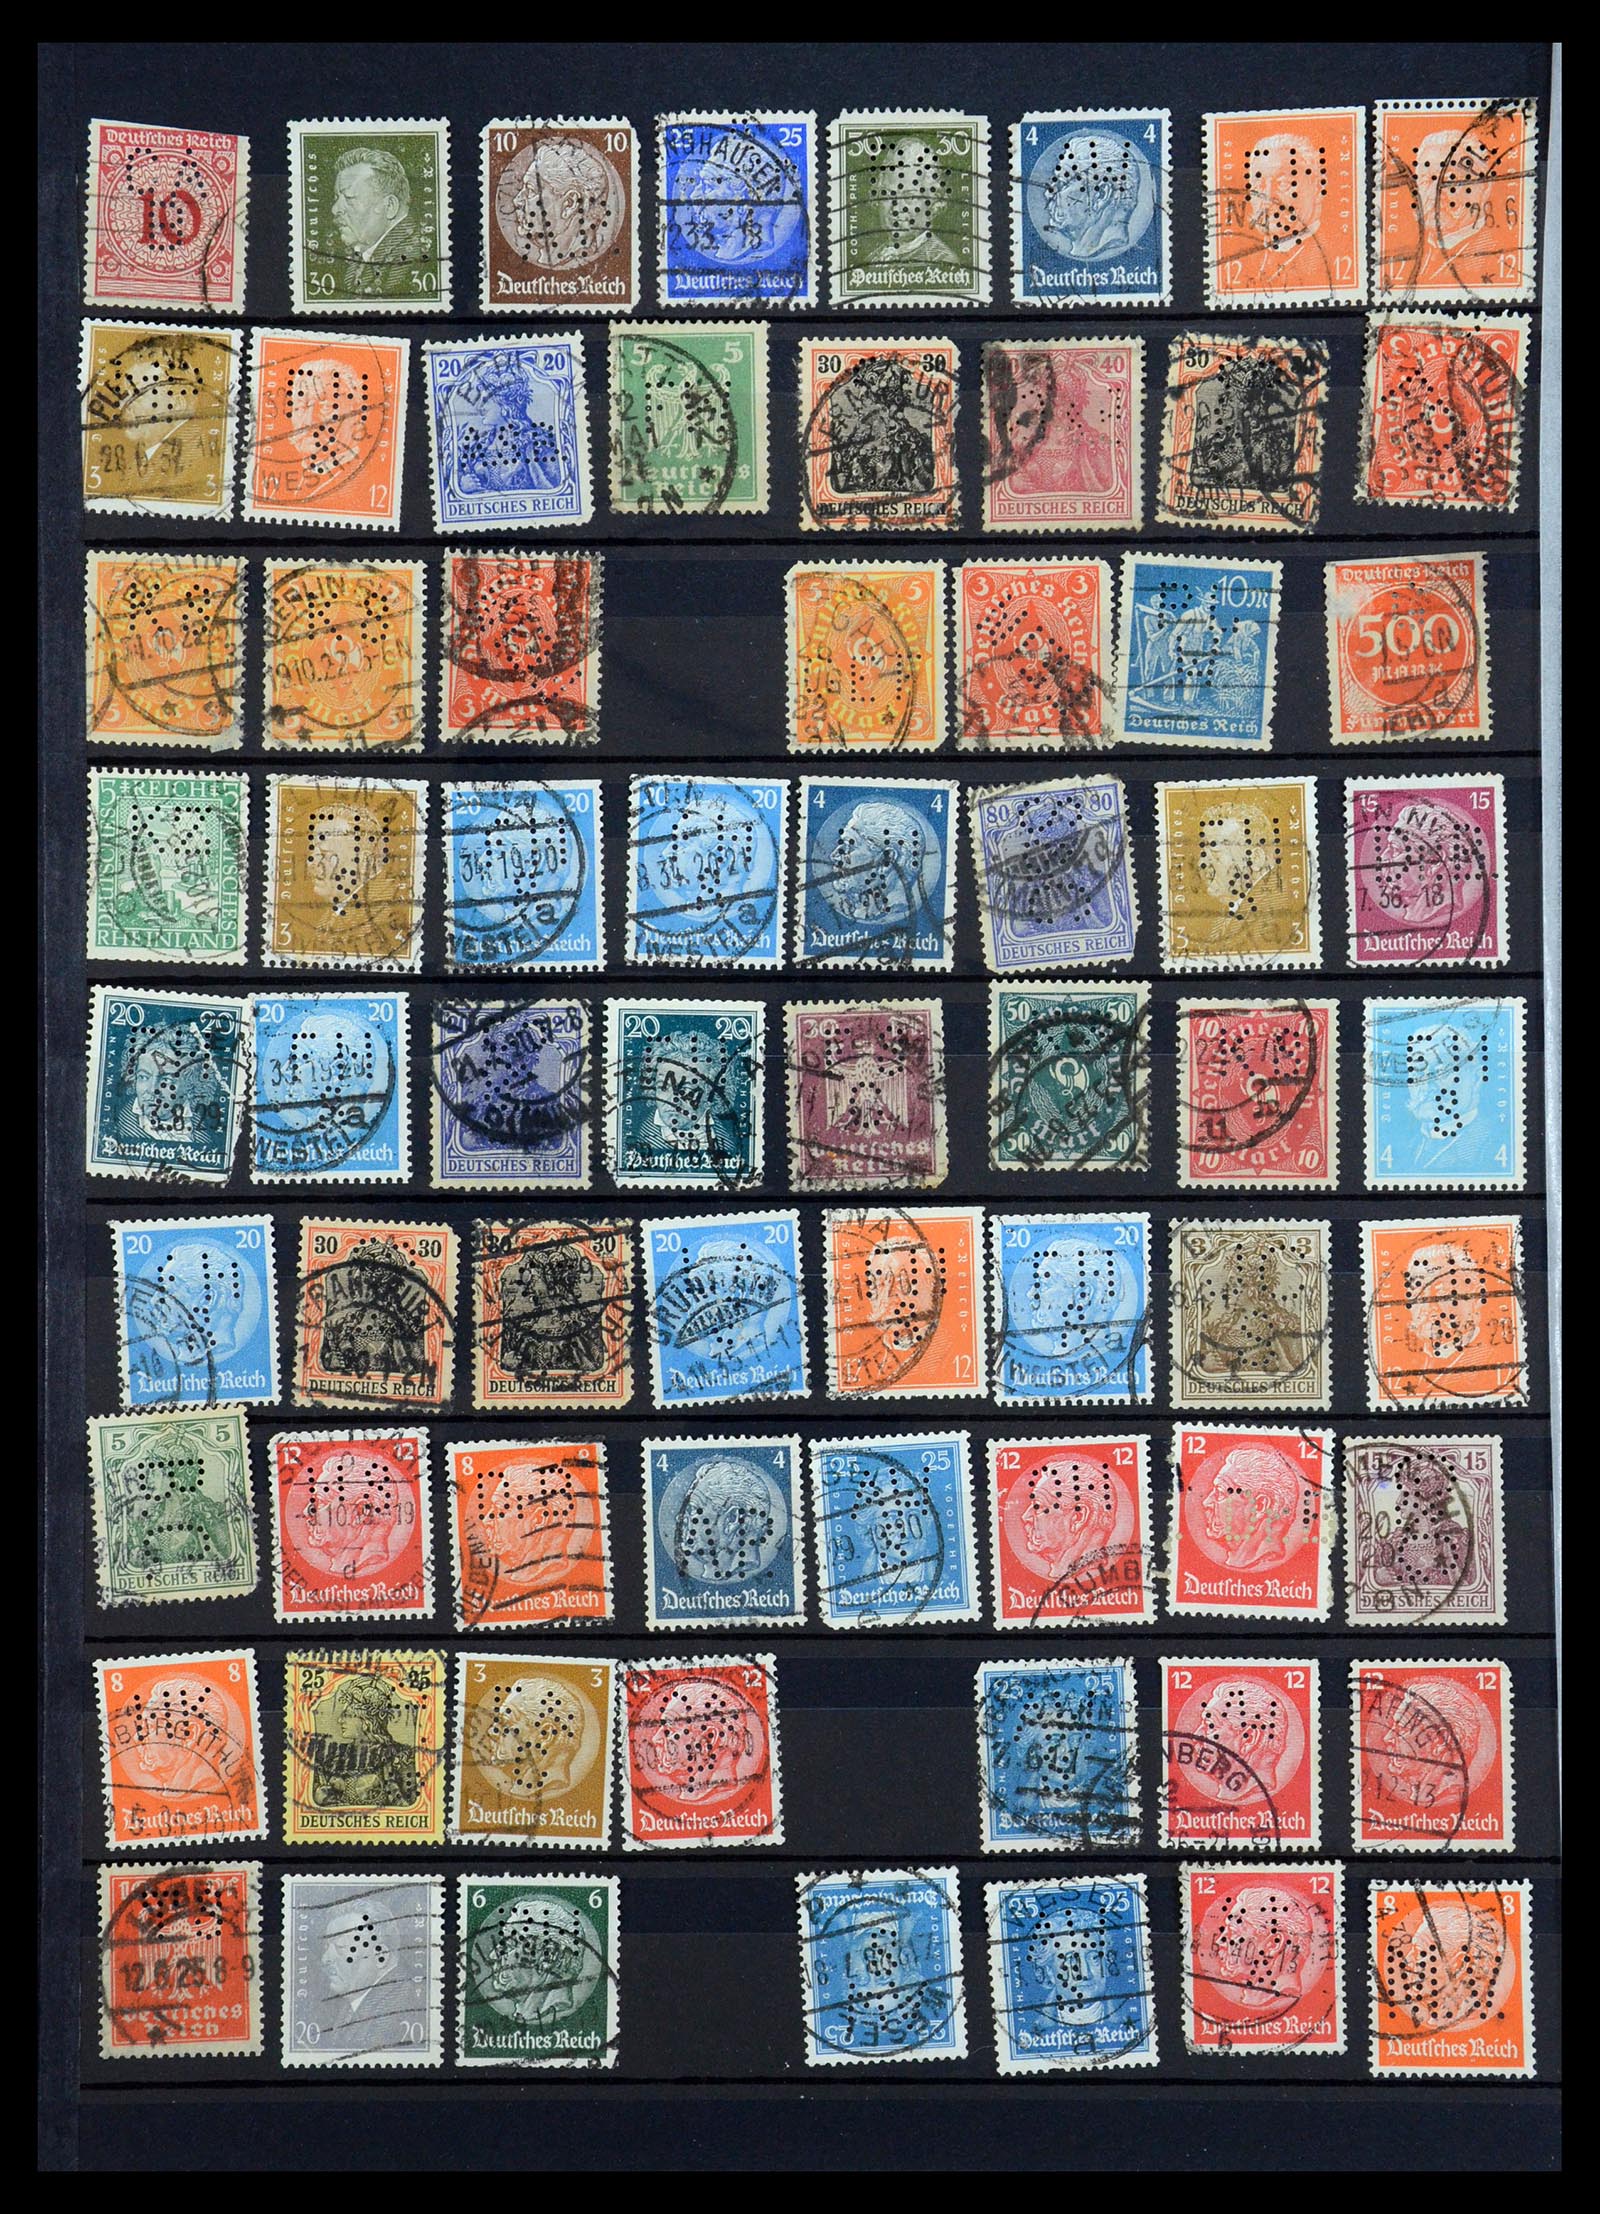 35183 056 - Stamp Collection 35183 German Reich perfins 1880-1945.